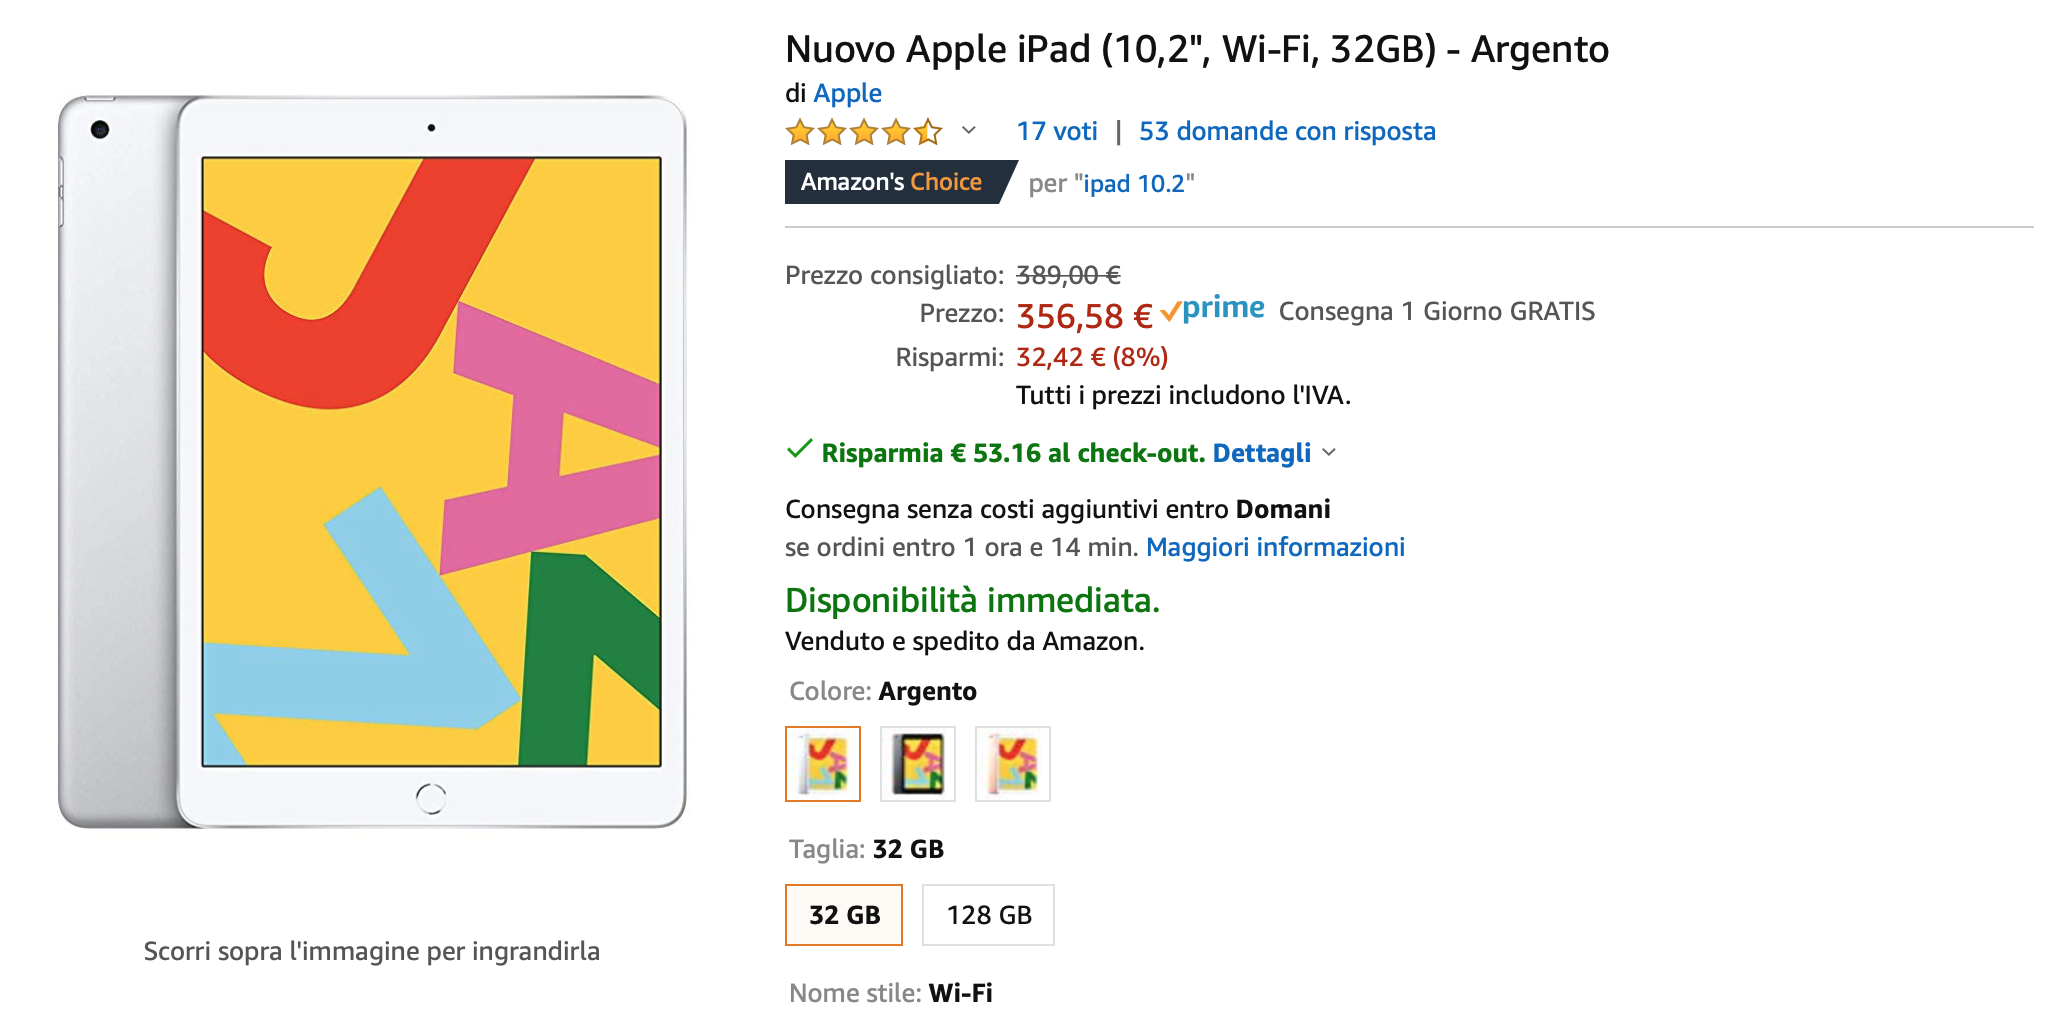 Amazon sconta iPad 10,2 del 22%: prezzo da 303 €, iPad mini a 358 € [aggiornato]